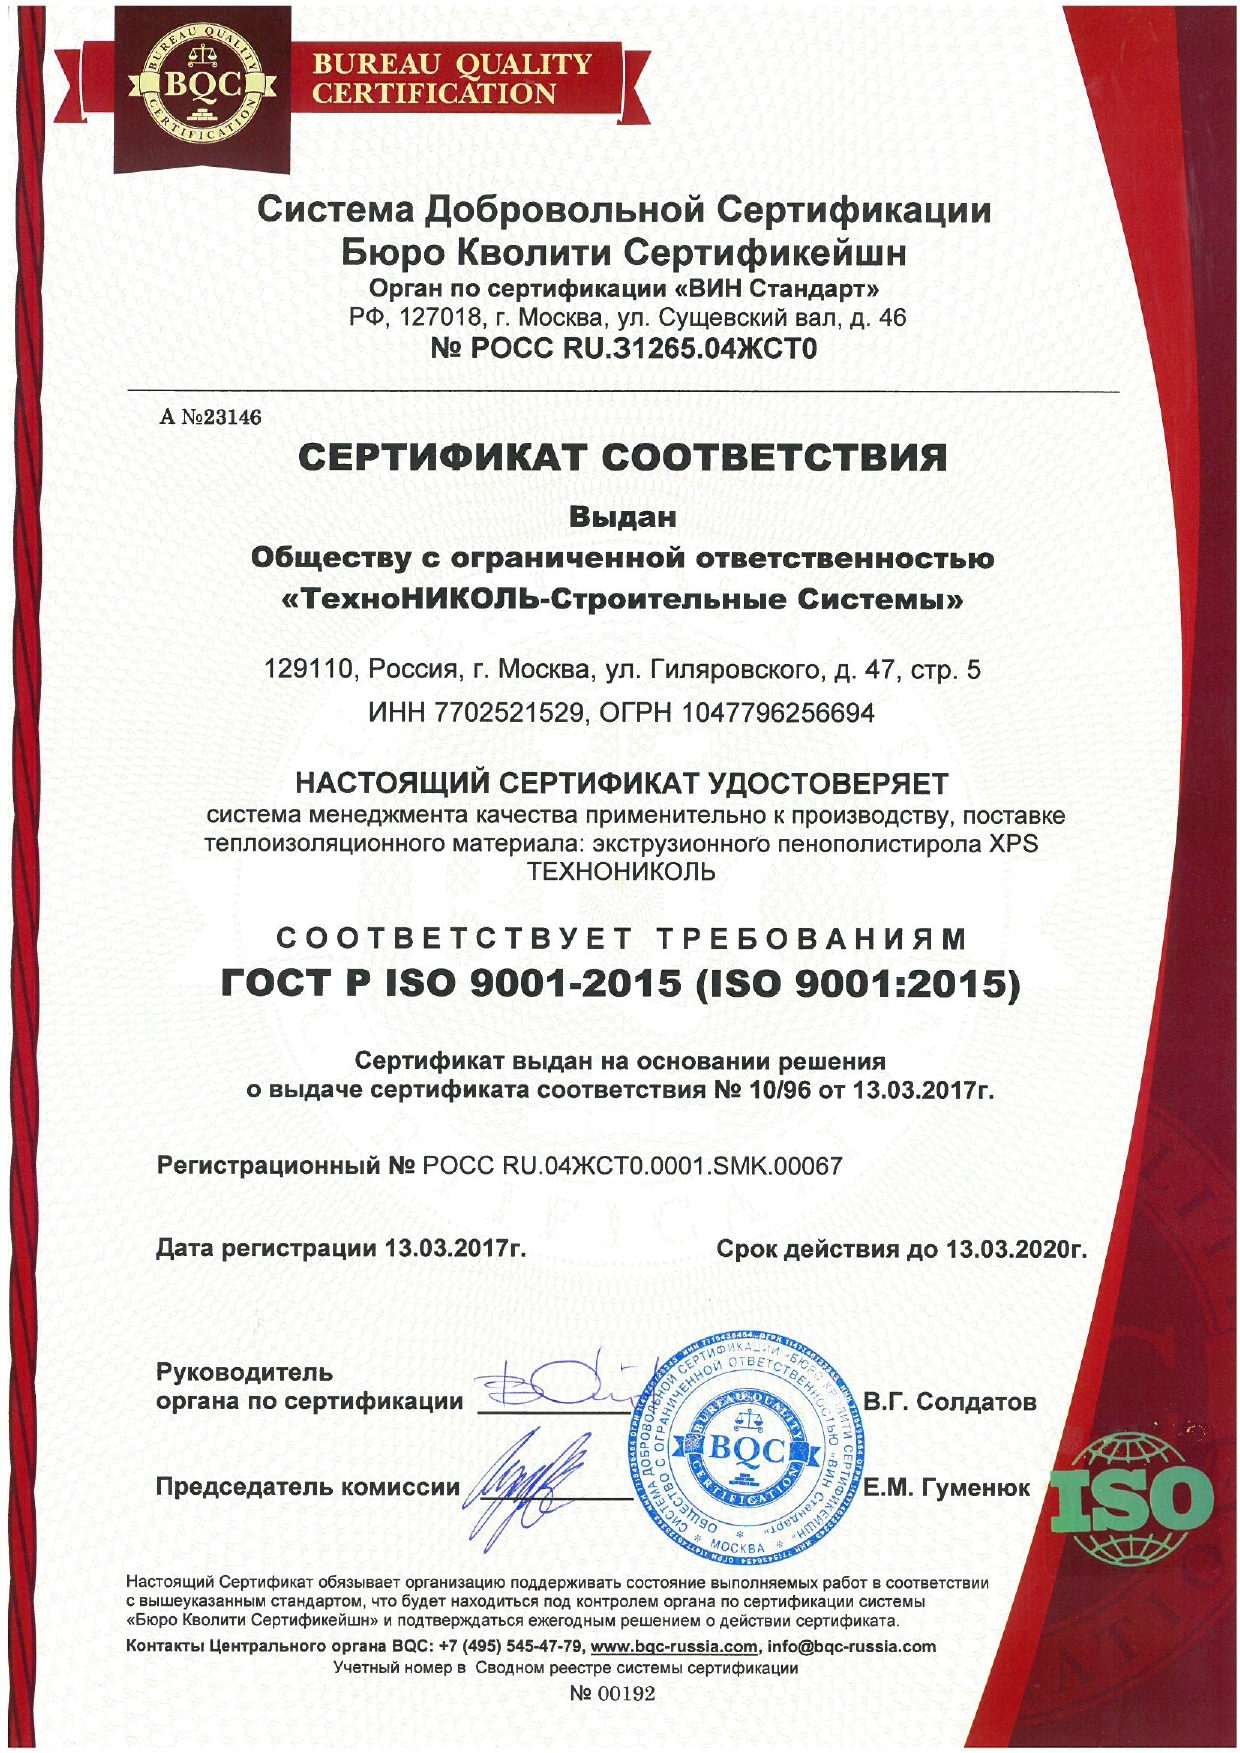 Сертификат соответствия заводы ГОСТ Р ISO 9001-2015 (часть1)